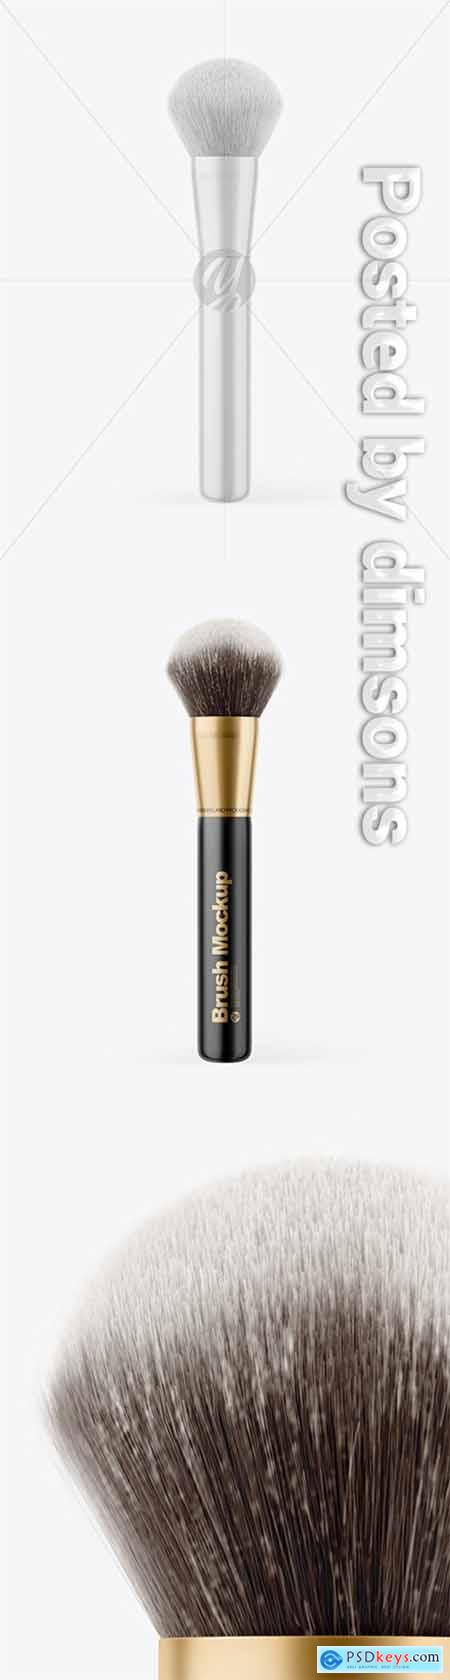 Glossy Powder Brush Mockup 66394